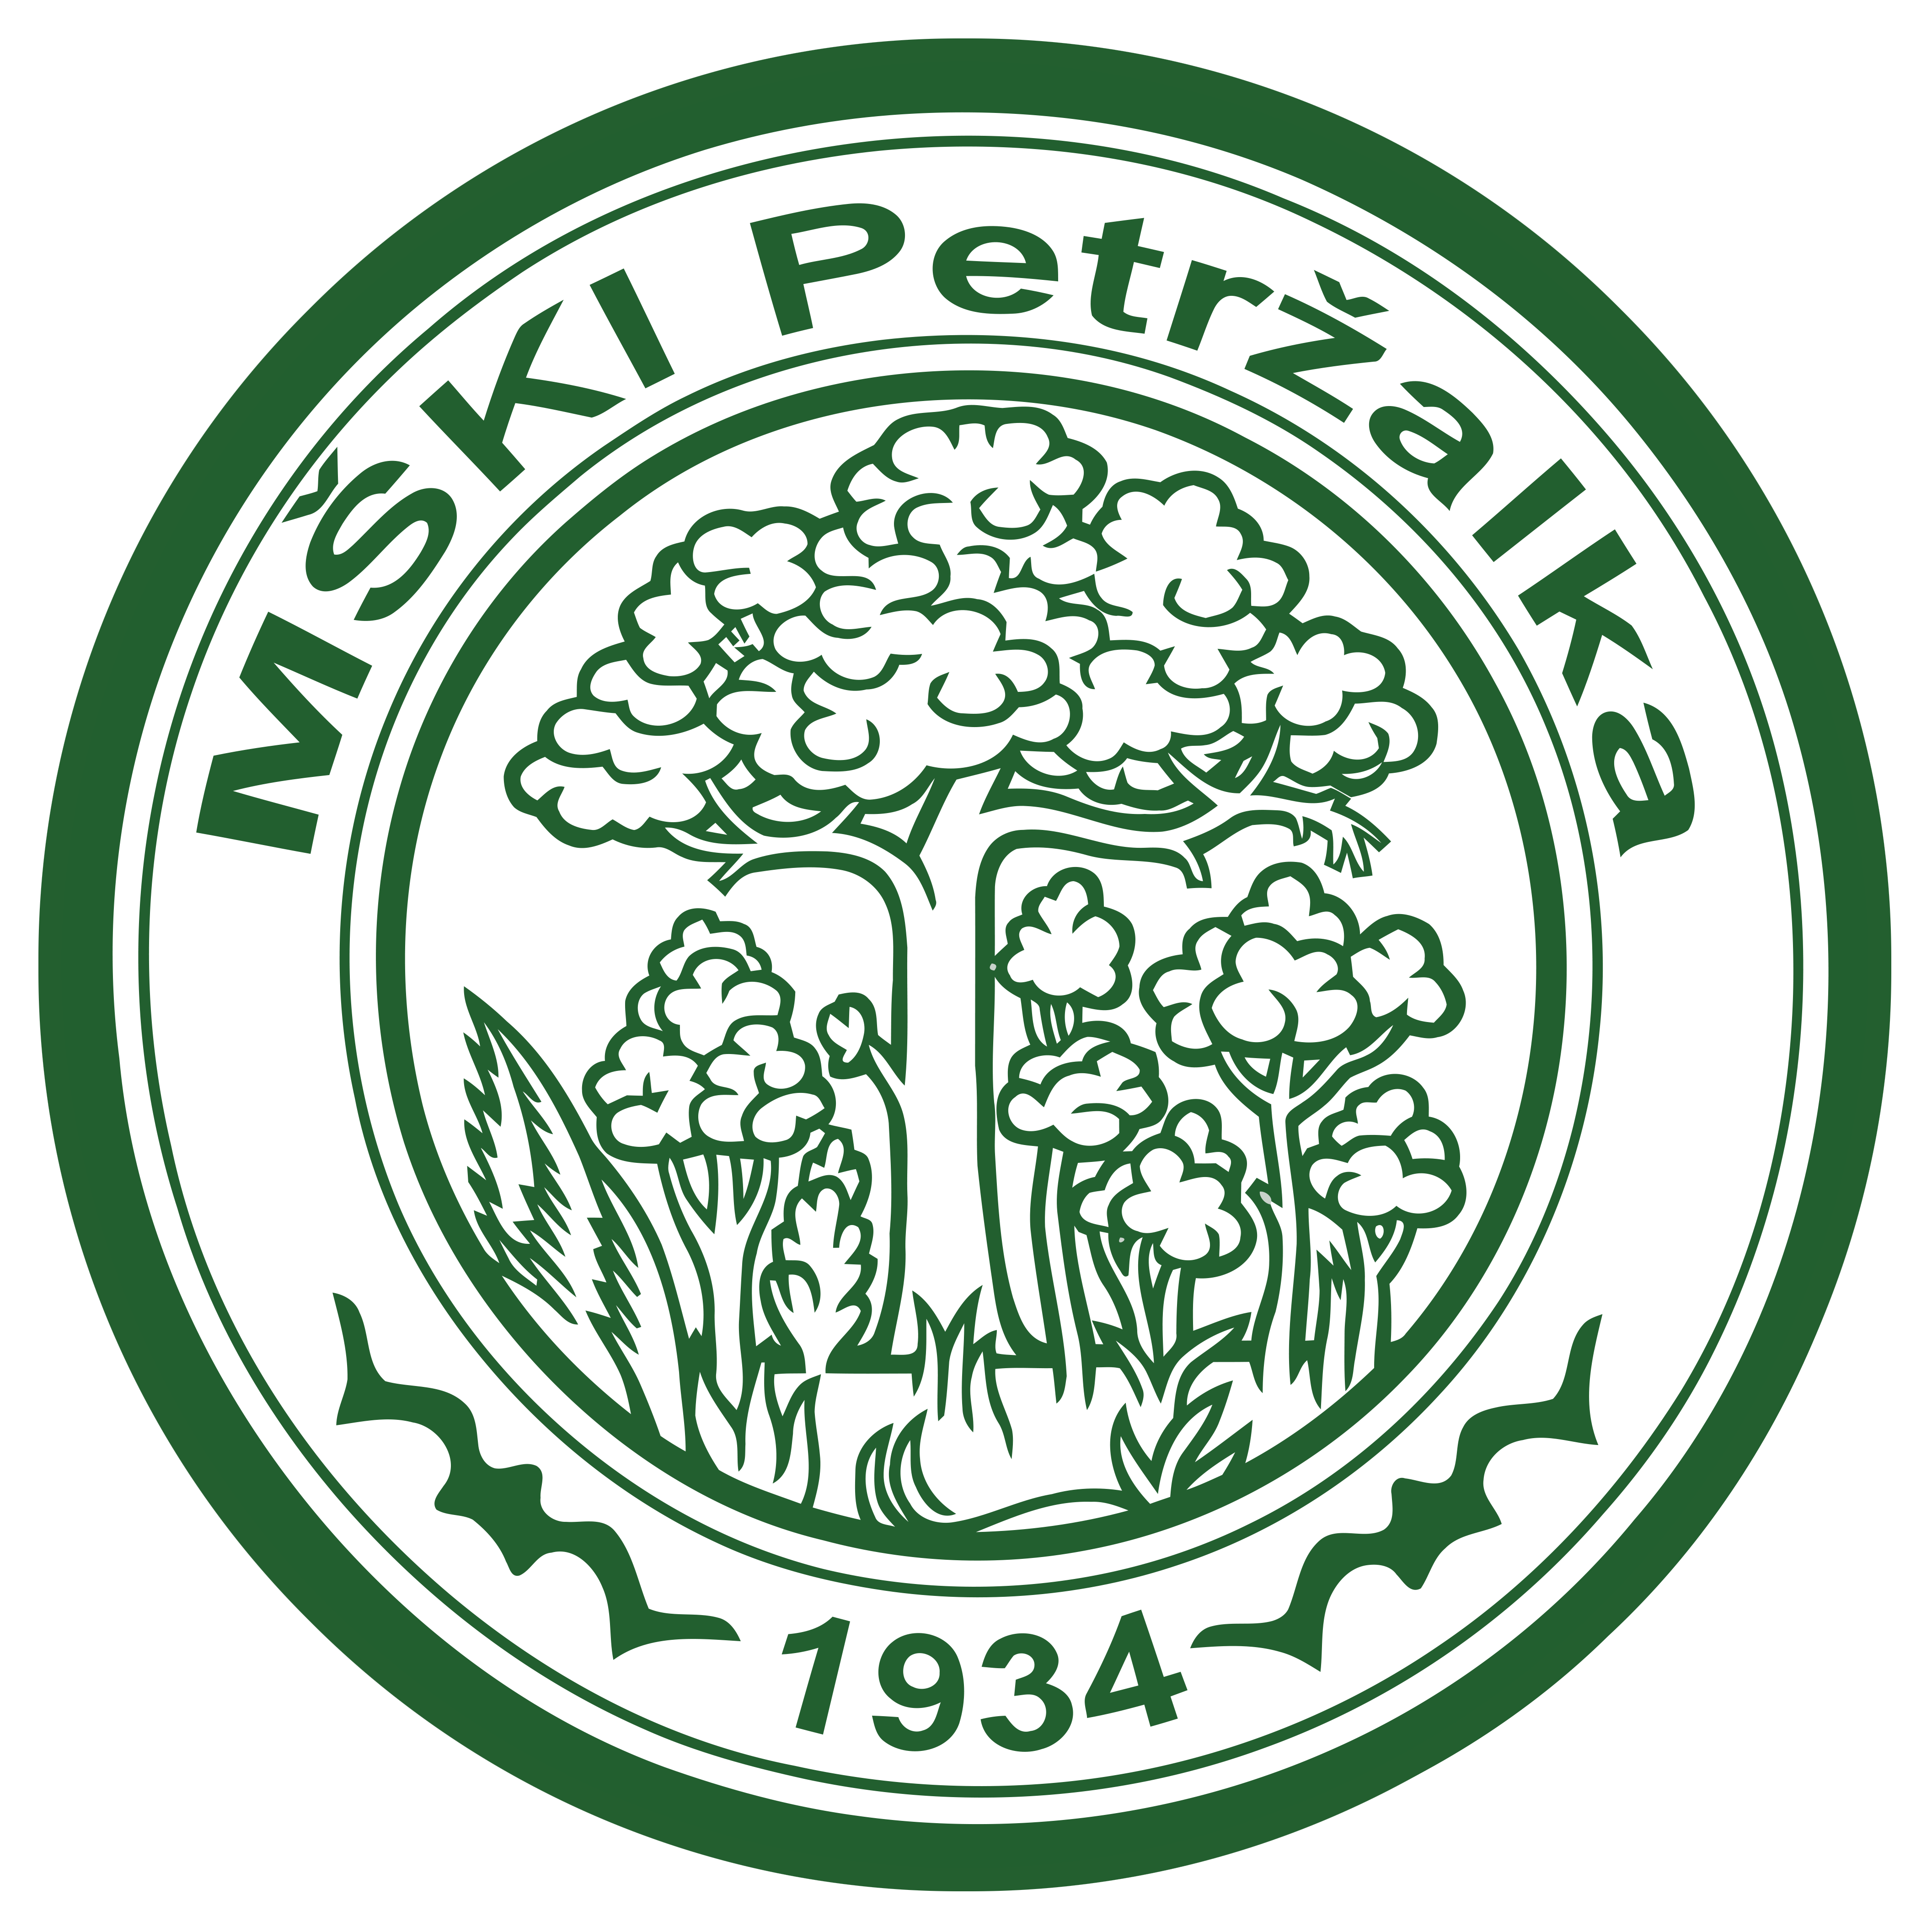 MŠK Iskra Petržalka logo